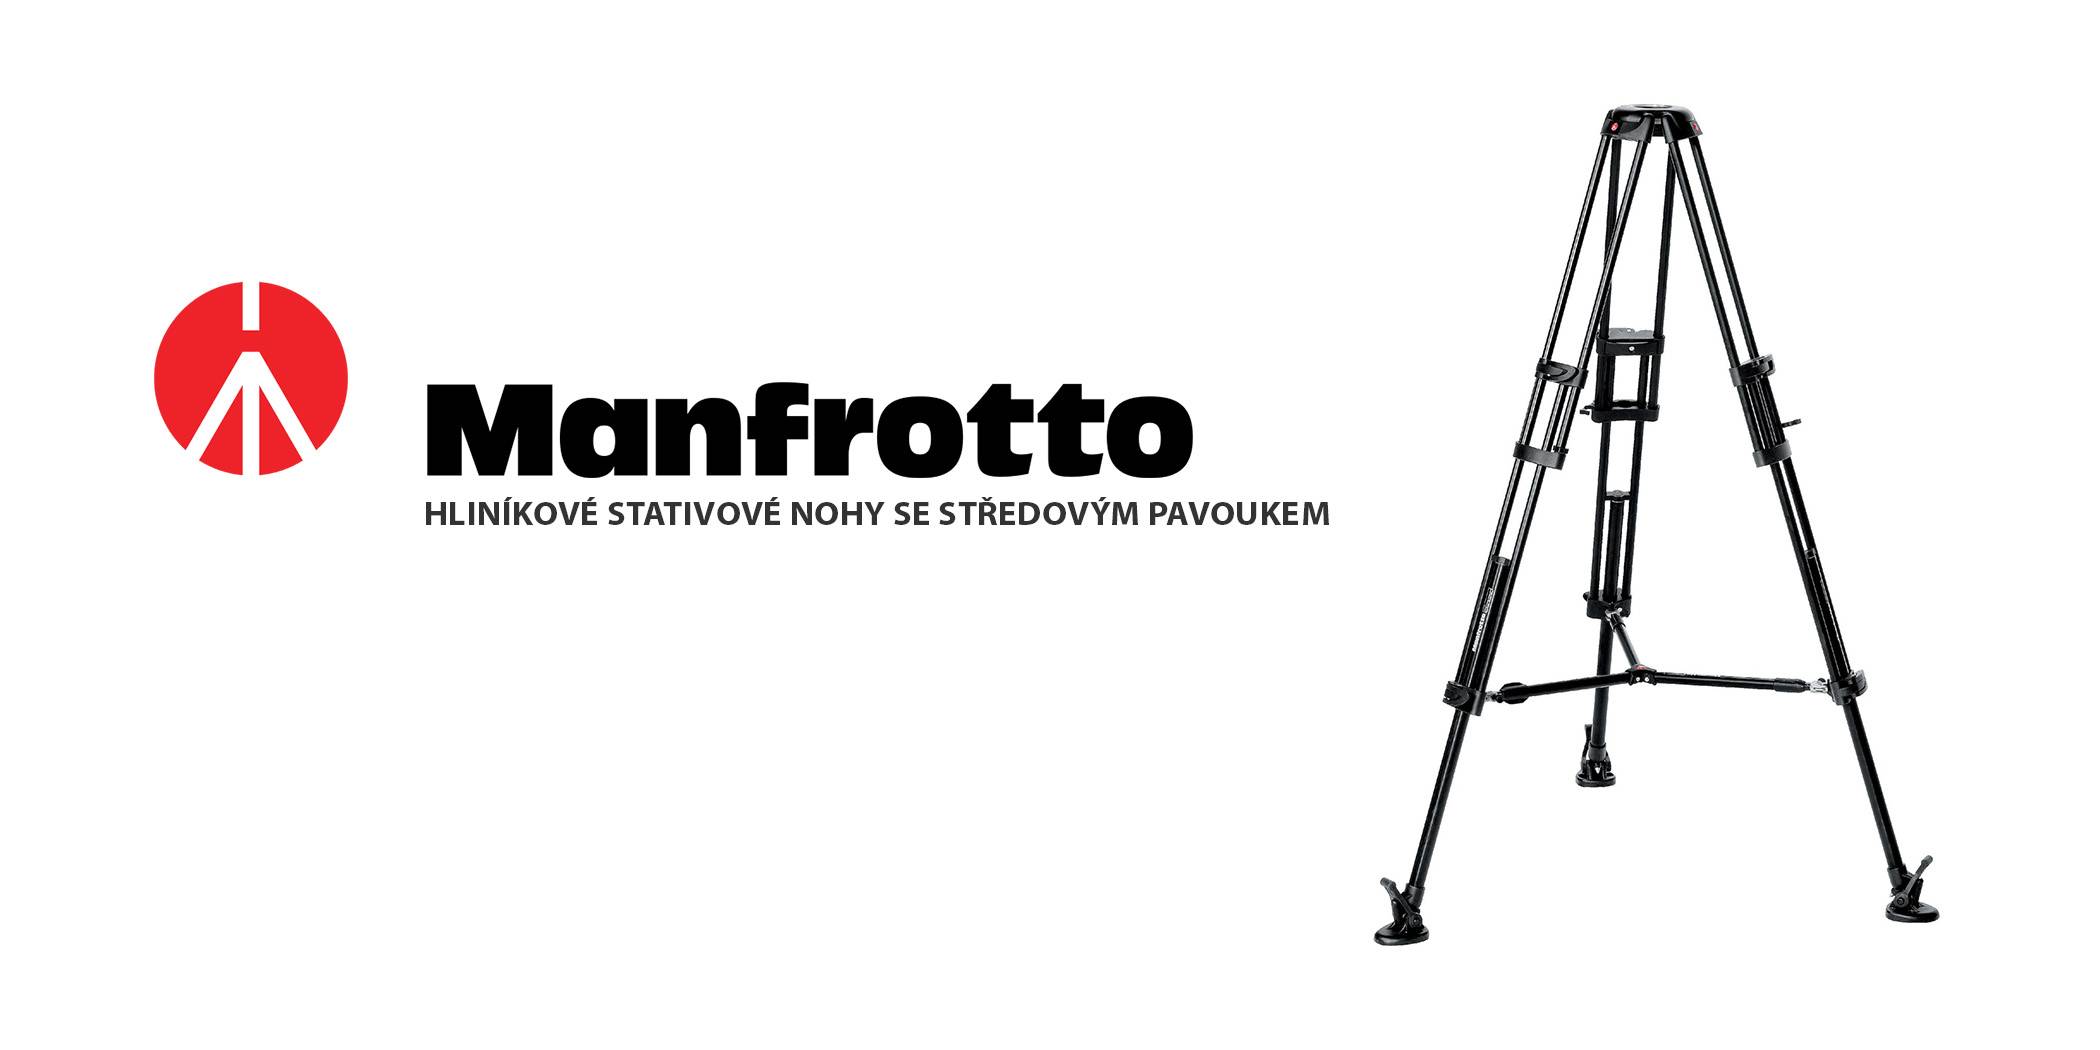 film-technika-manfrotto-hliníkové-stativové-nohy-se-středovým-pavoukem